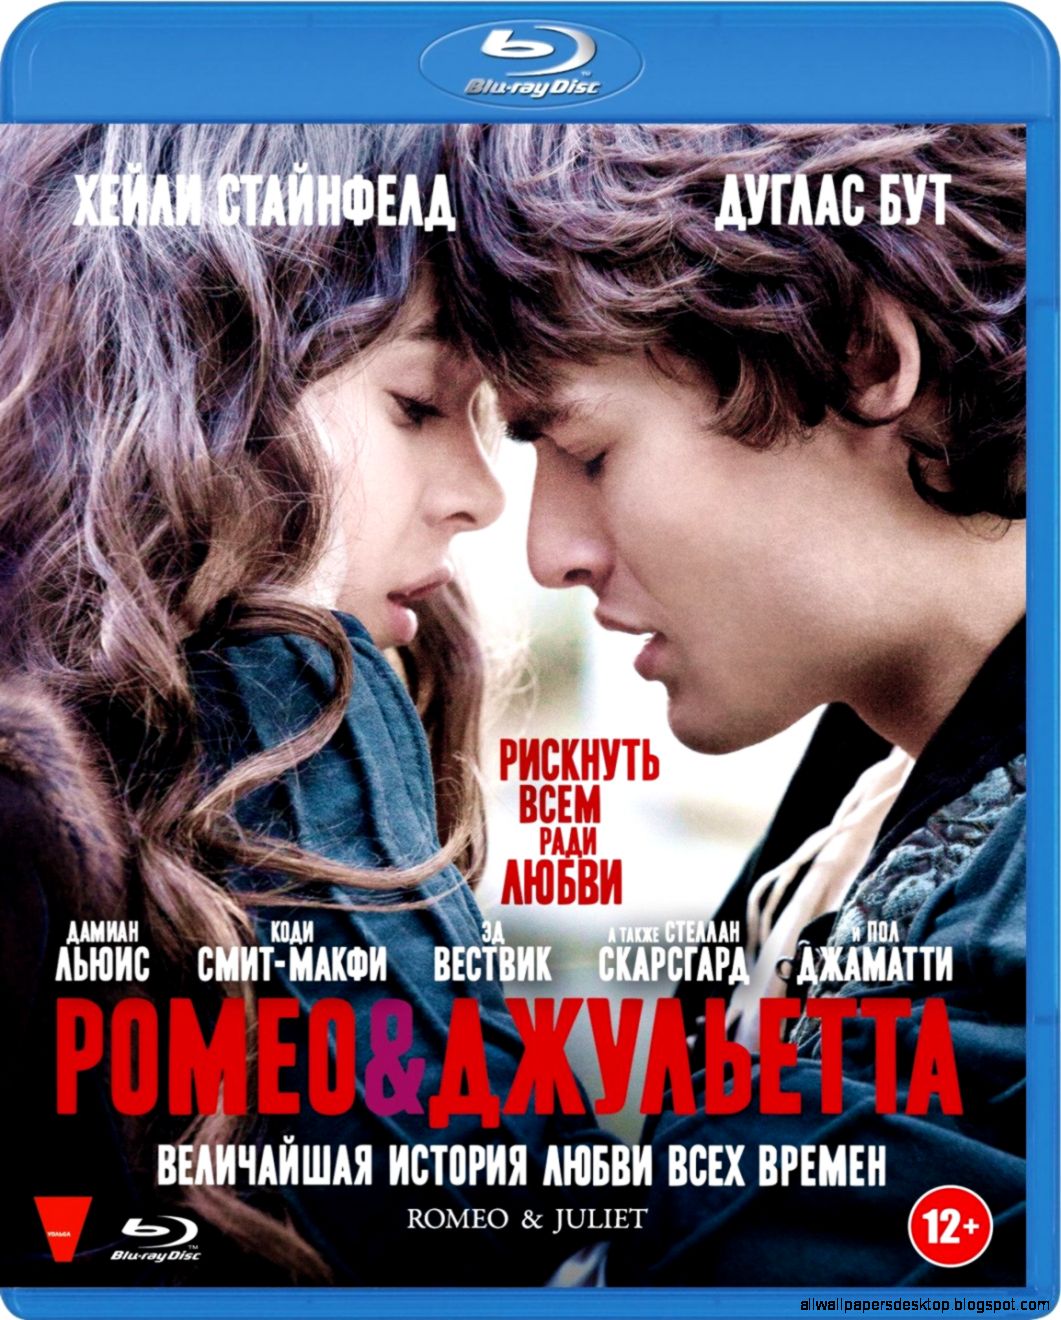 Romeo & juliet 2013 movie